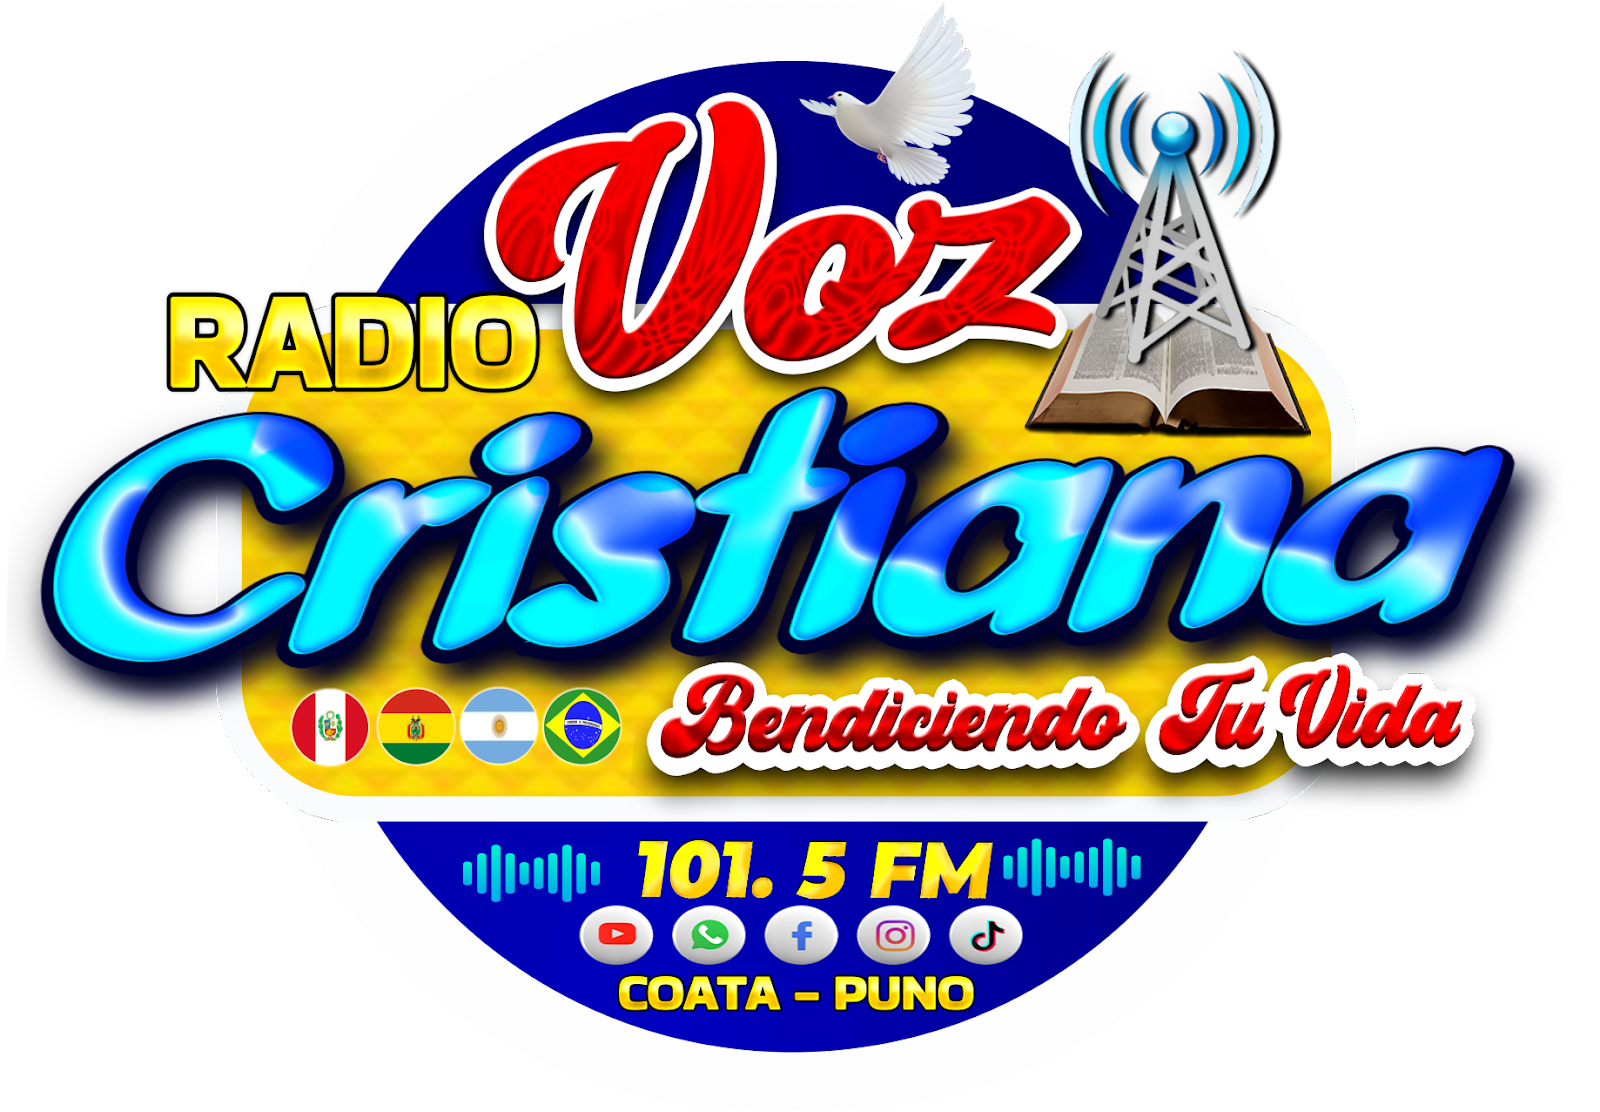 Radio VOZ CRISTIANA 101.5 FM  - COATA